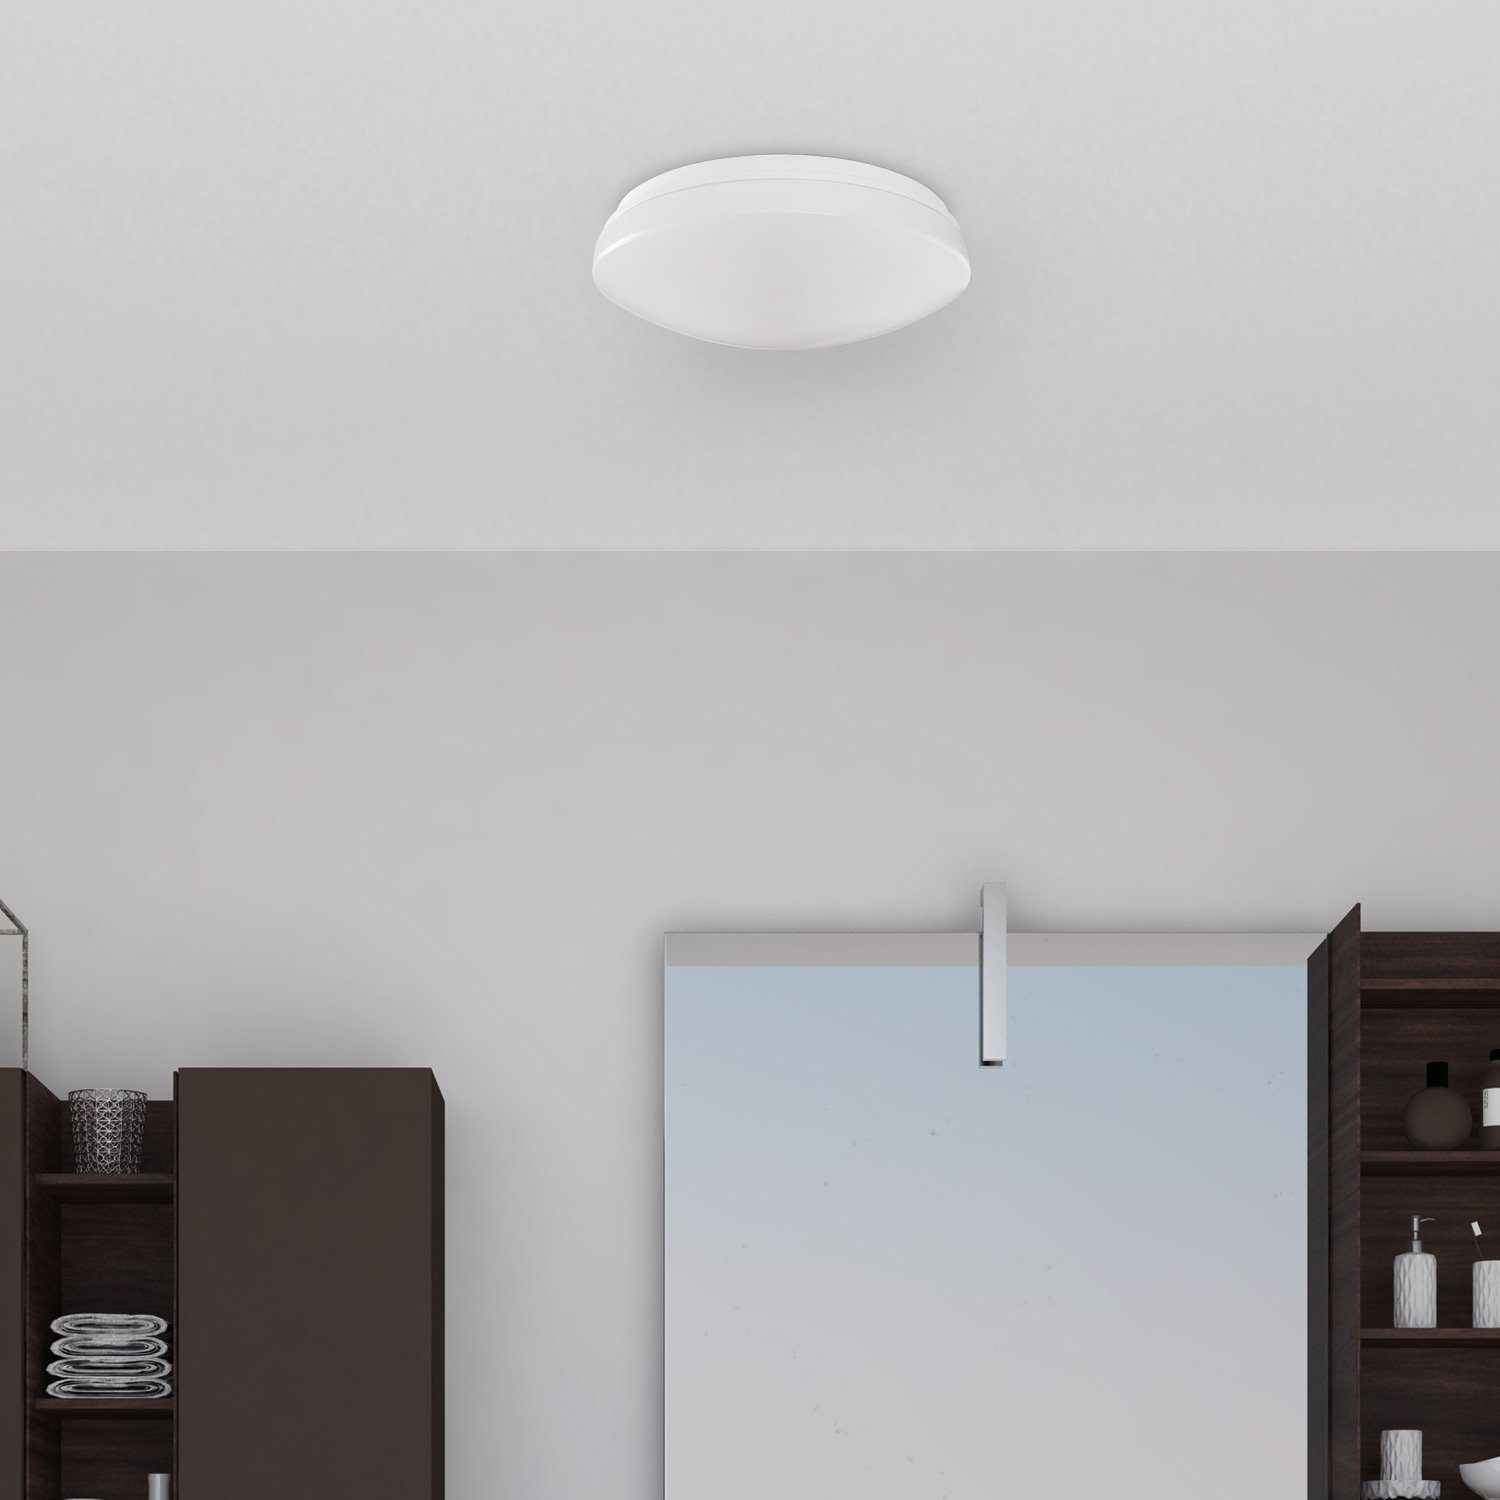 KENU, Wohnzimmer wechselbar, Paco Lampe Weiß Bad Wandleuchte Deckenleuchte dimmbar IP44 Warmweiß, LED Wasserfest Home LED